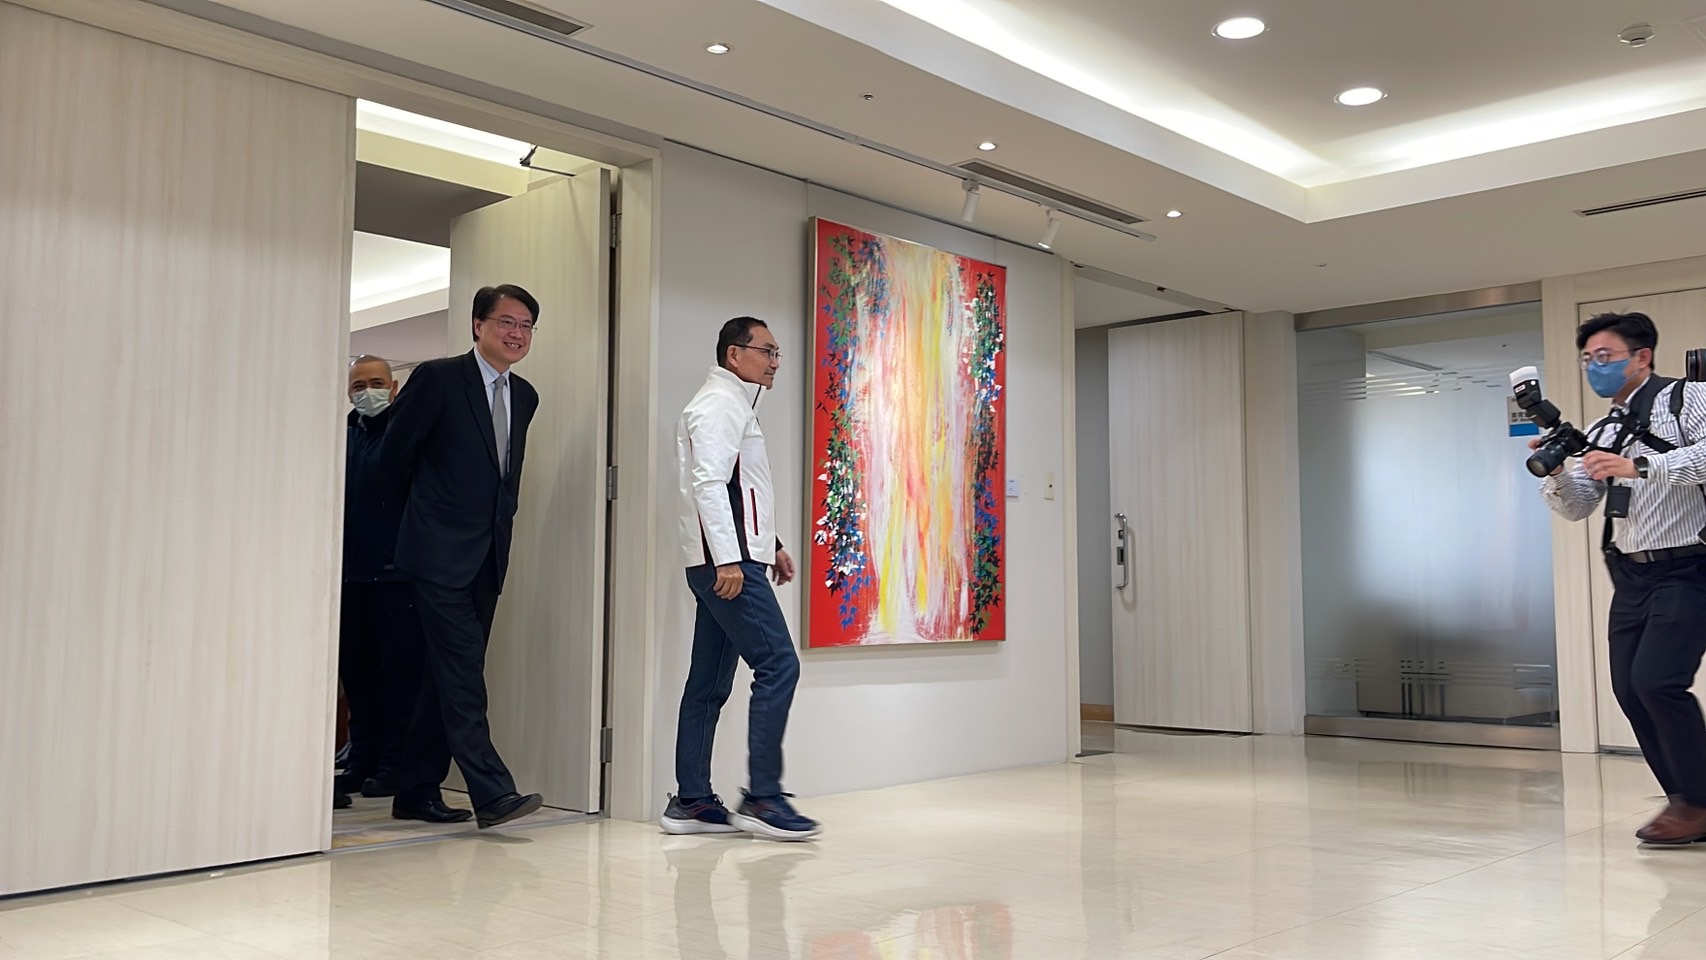 新北市长侯友宜与内政部长林右昌一起步出贵宾室。记者叶德正／摄影